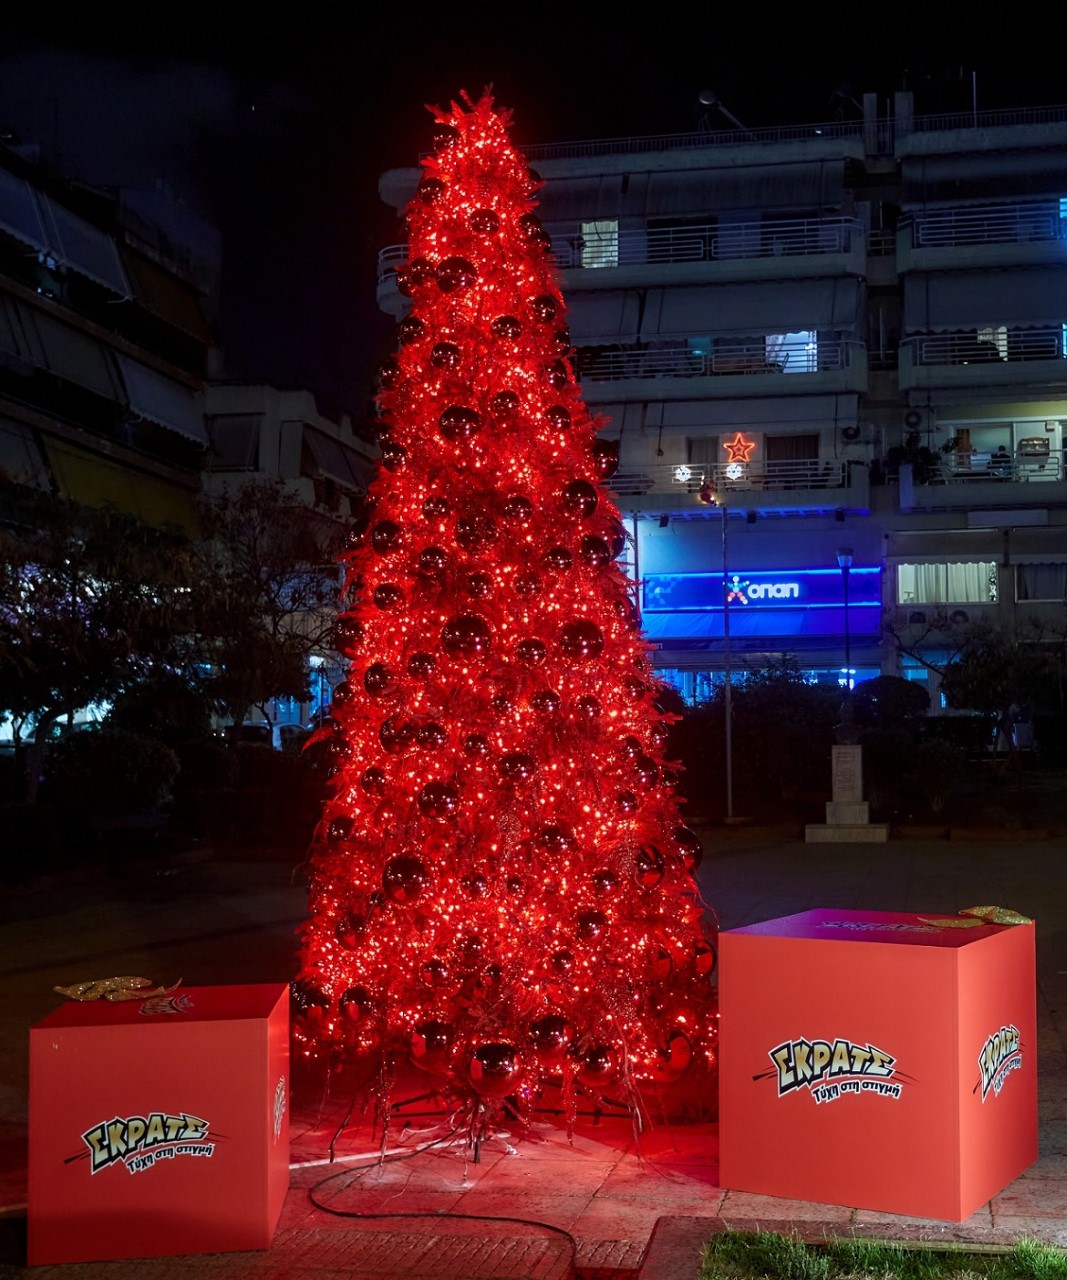 Χριστουγεννιάτικα κλικ κάτω από το κατακόκκινο δέντρο του ΣΚΡΑΤΣ στο Γαλάτσι 